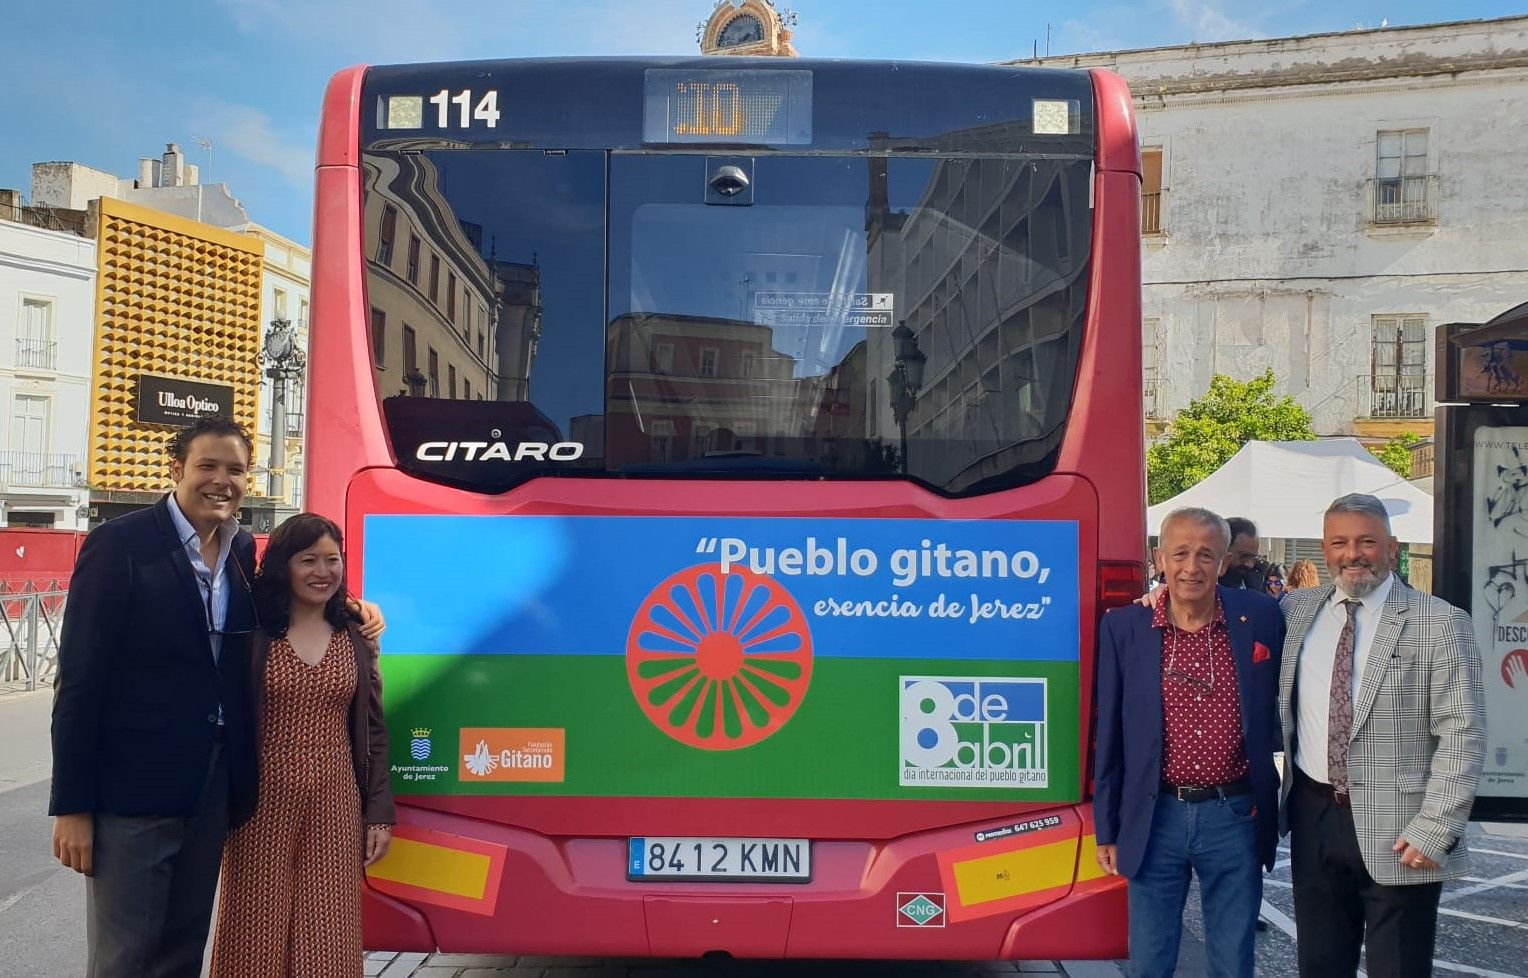 El autobús urbano que conmemora el Día Internacional del Pueblo Gitano en Jerez.